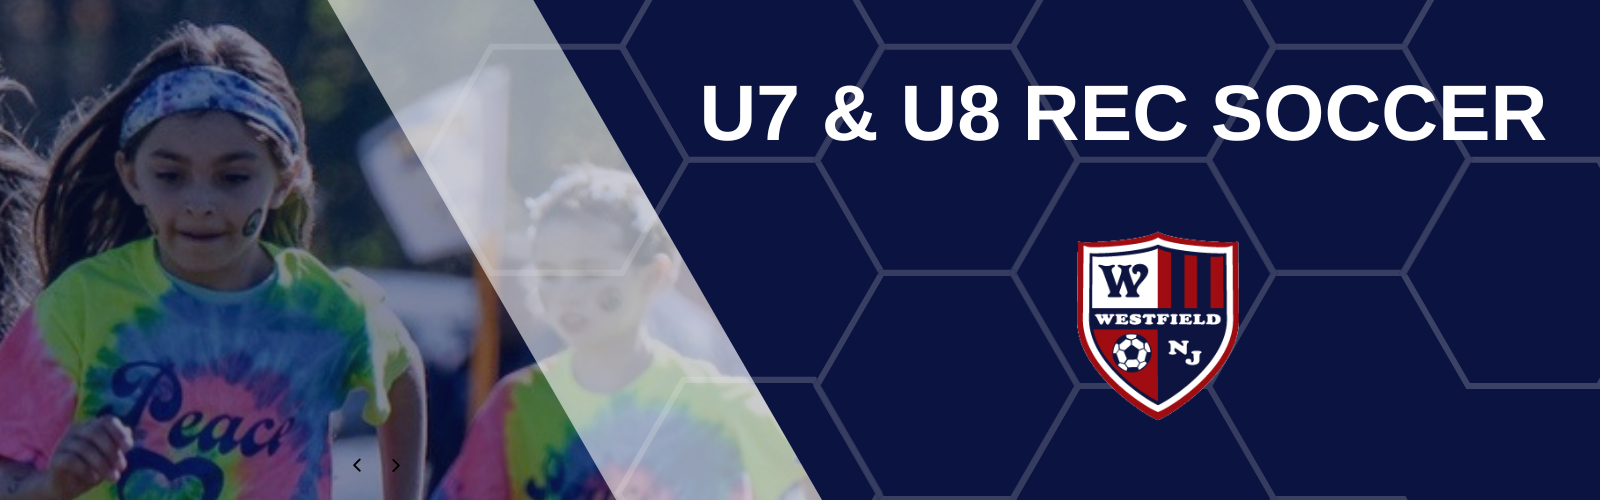 U7 and U8 Rec Soccer Program